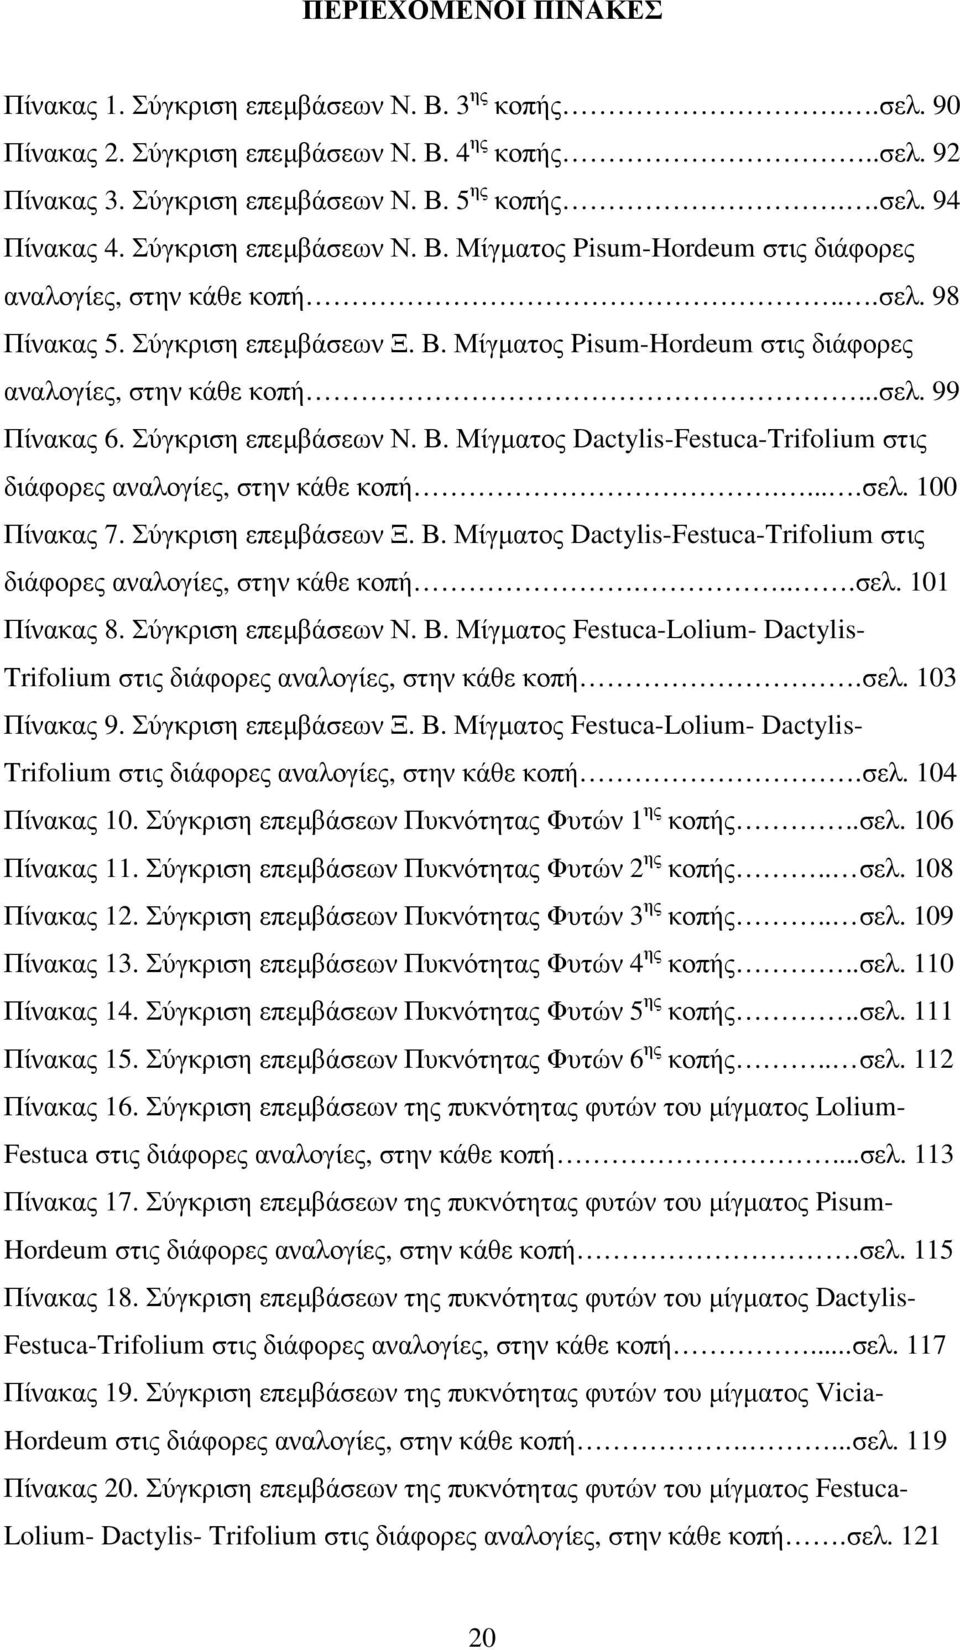 Σύγκριση επεµβάσεων Ν. Β. Μίγµατος Dactylis-Festuca-Trifolium στις διάφορες αναλογίες, στην κάθε κοπή.....σελ. 100 Πίνακας 7. Σύγκριση επεµβάσεων Ξ. Β. Μίγµατος Dactylis-Festuca-Trifolium στις διάφορες αναλογίες, στην κάθε κοπή....σελ. 101 Πίνακας 8.